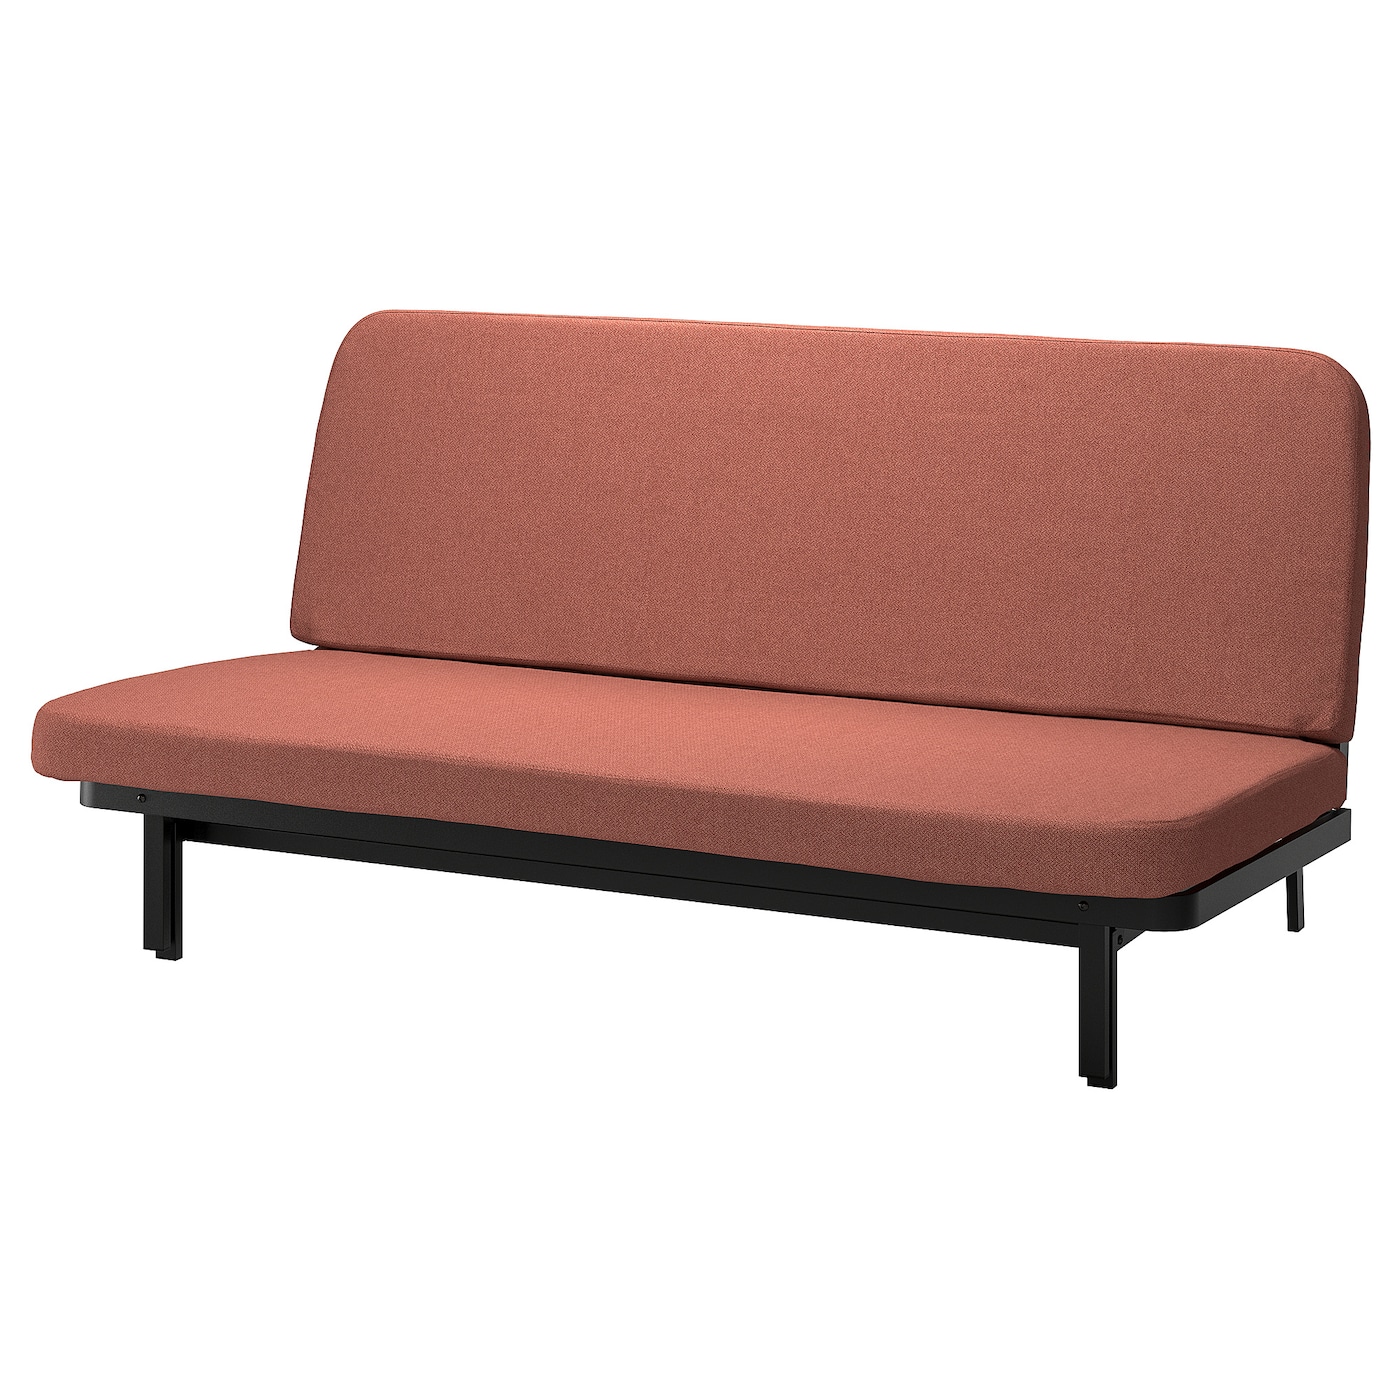 NYHAMN 3-местный диван-кровать, пружинный матрас в комплекте/Скартофта красный/коричневый IKEA складная двухцелевая спинка плавающий ряд с сетчатым гамаком водный развлекательный шезлонг плавающая кровать диван